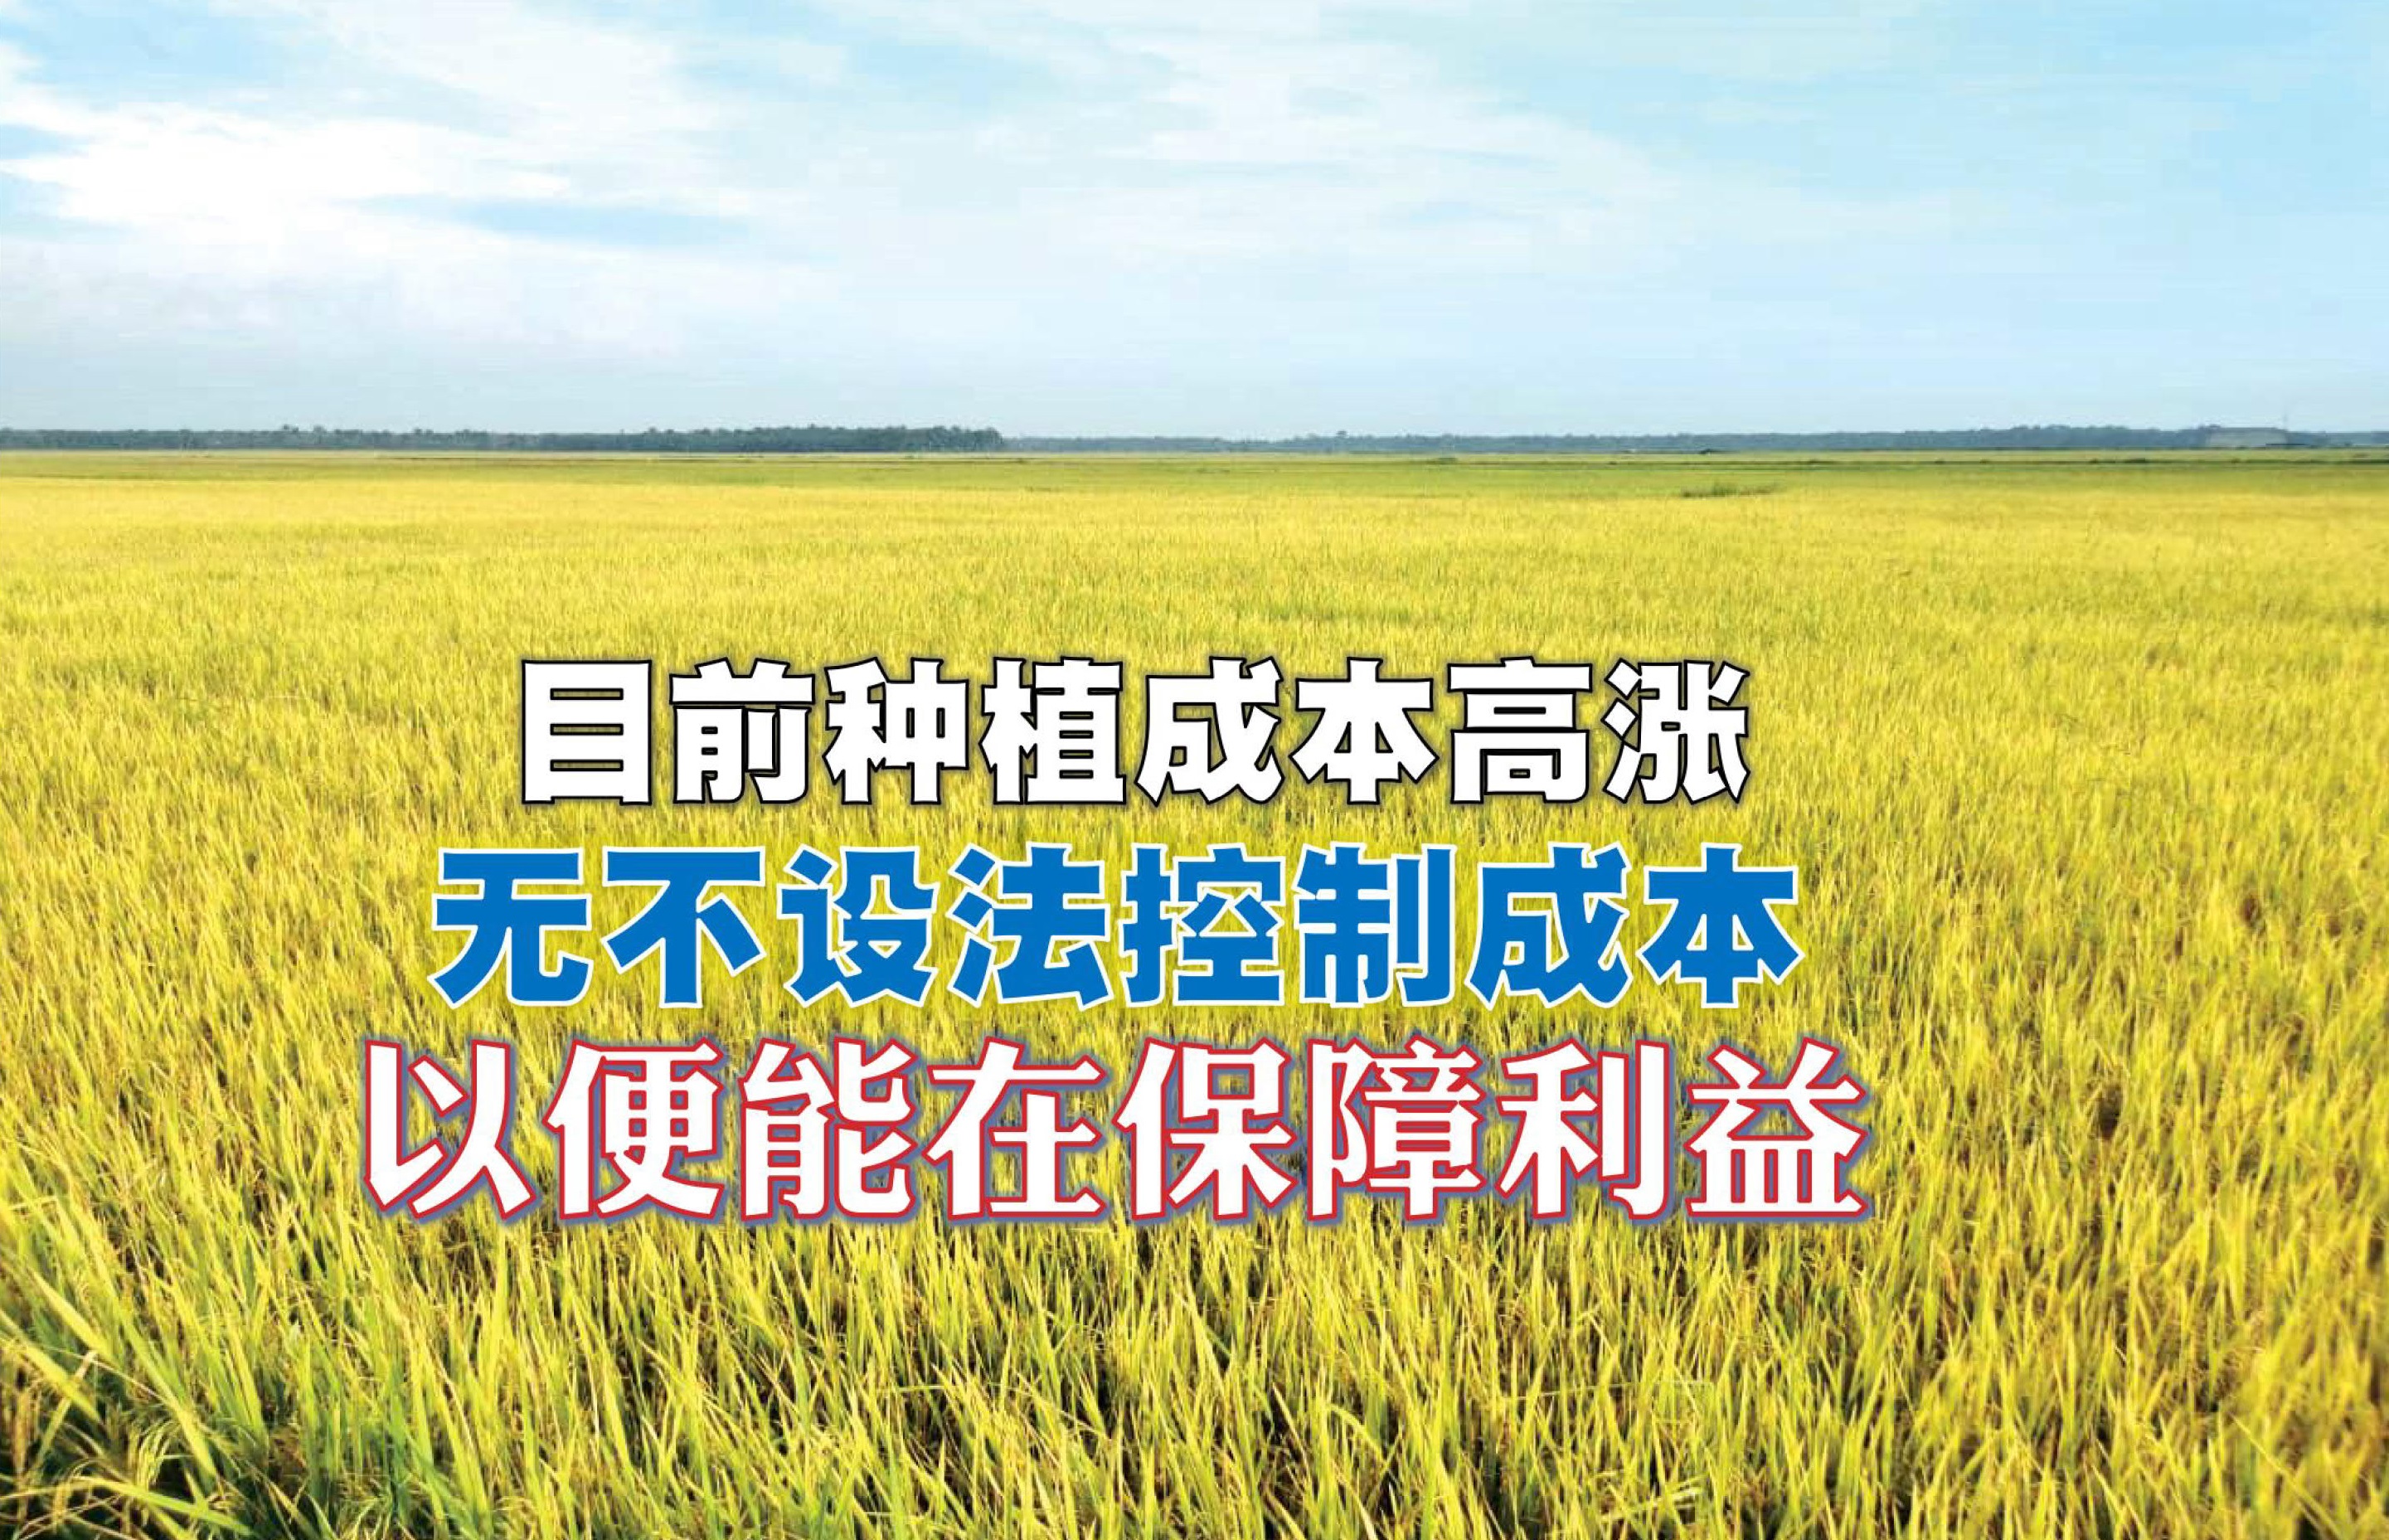 稻农想方设法降低成本 选用优质液肥保障产量 - 农牧世界